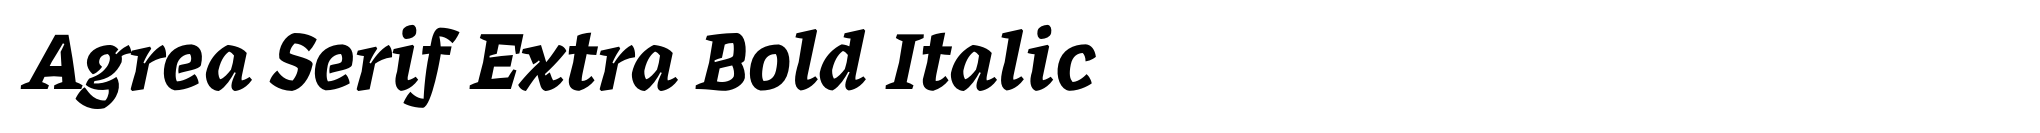 Agrea Serif Extra Bold Italic image